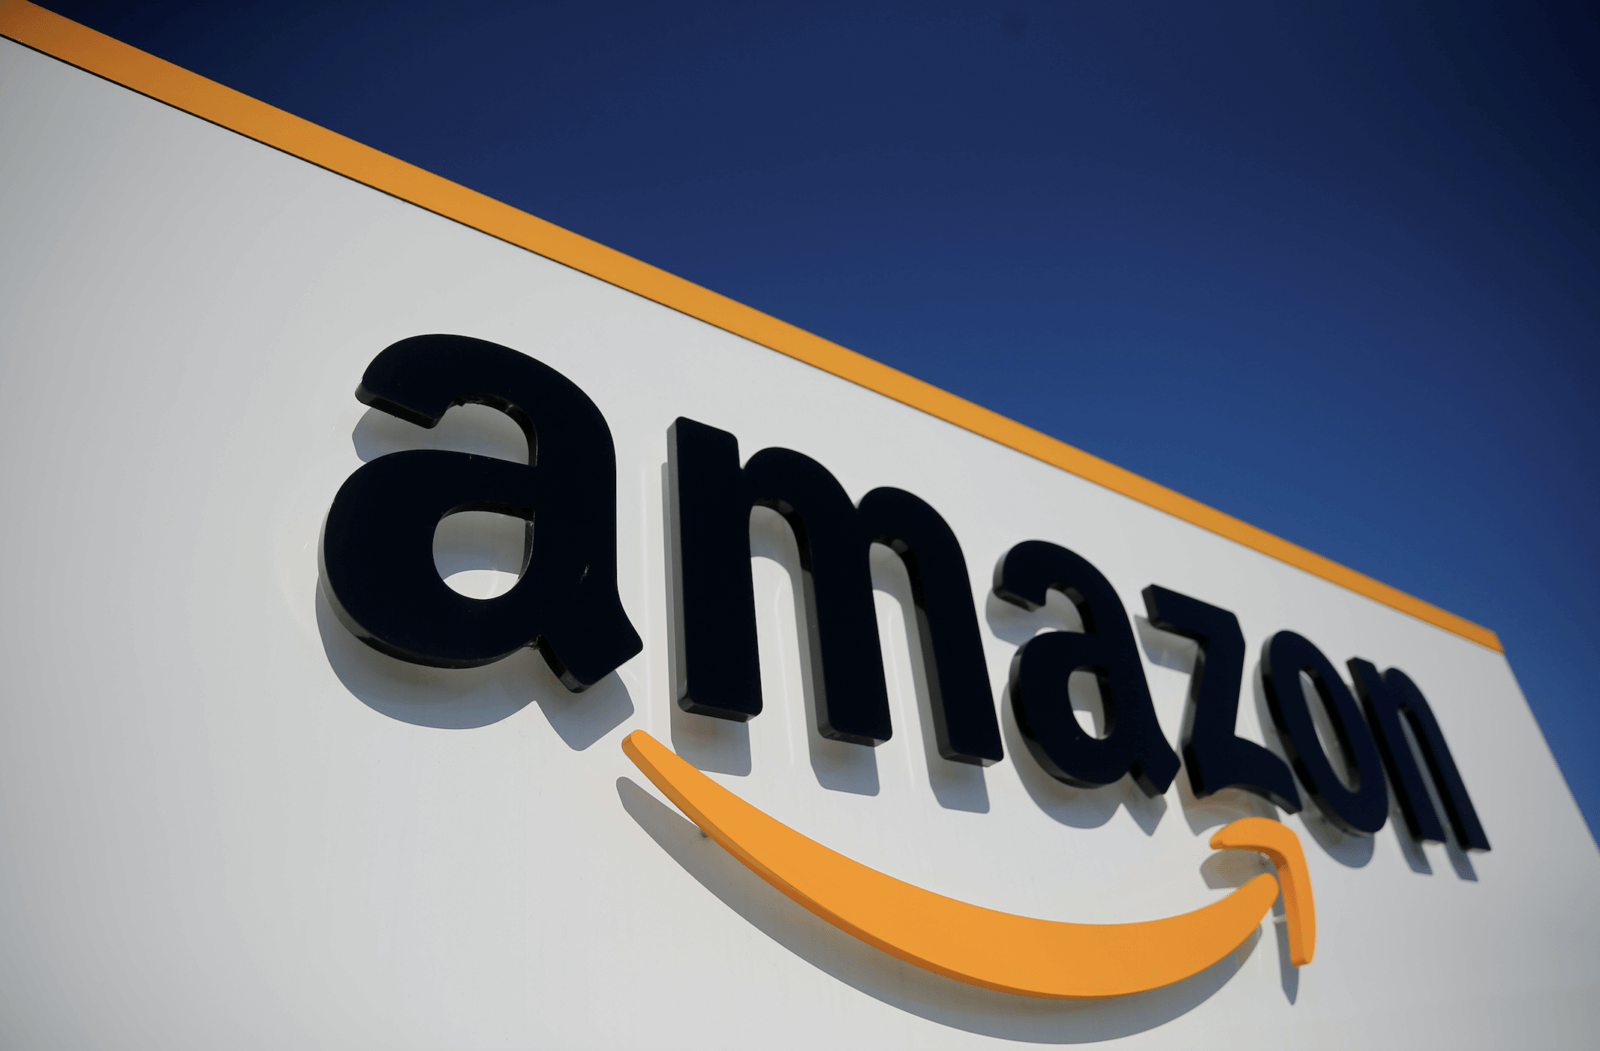 Amazon signs lease for massive warehouse in Maspeth – QNS.com